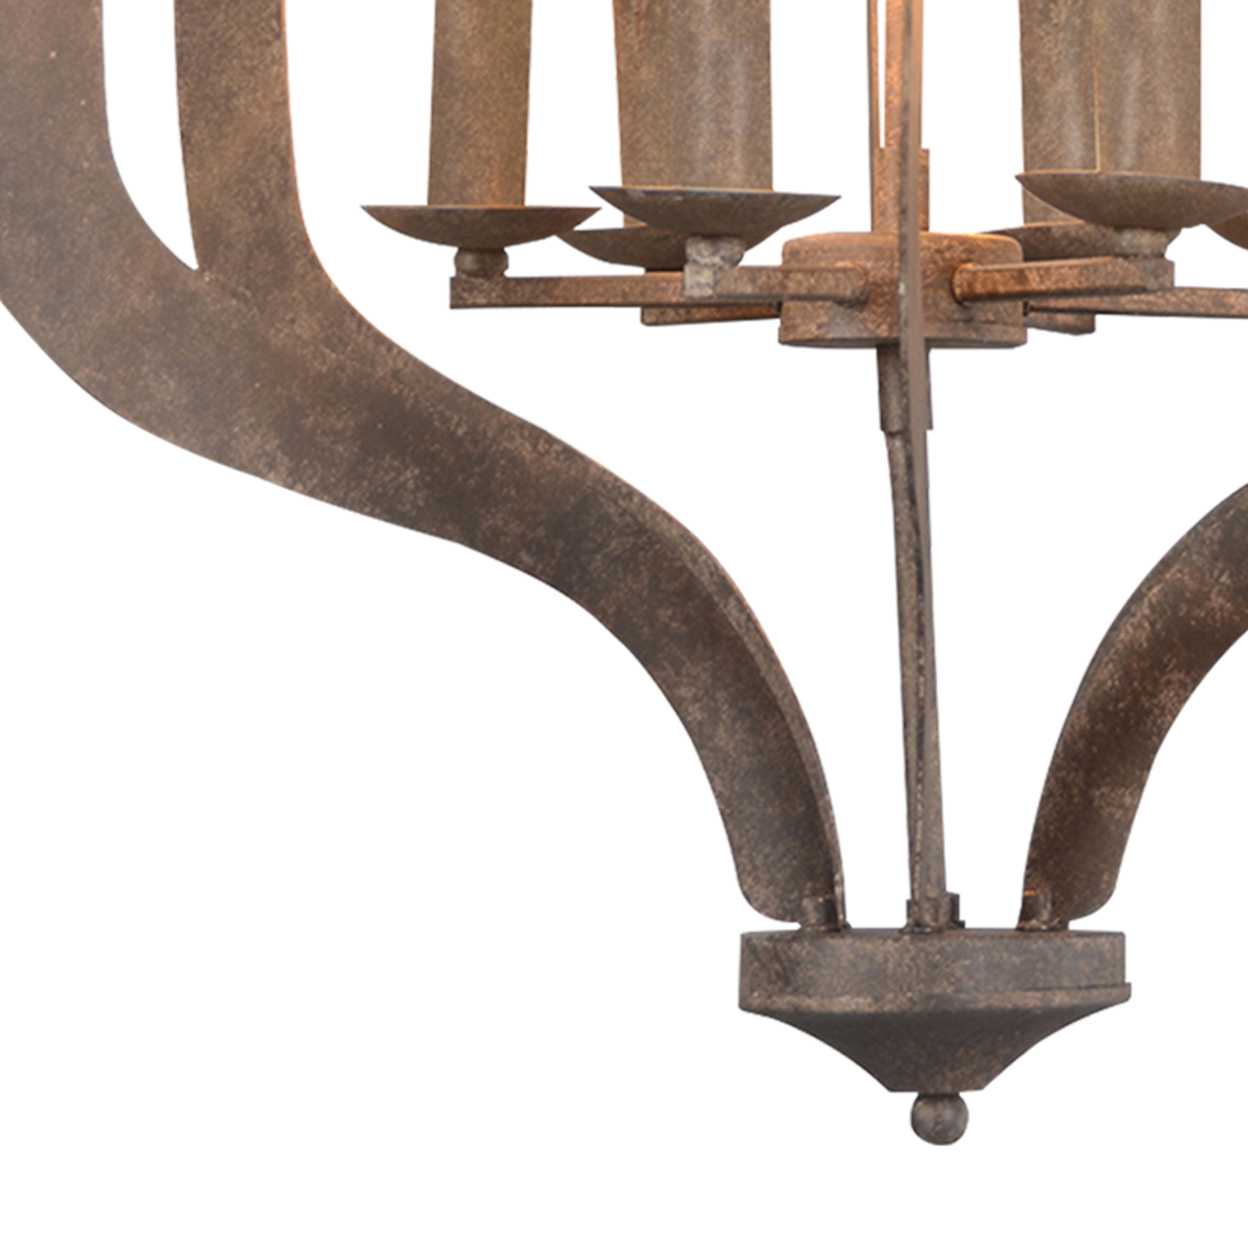 6 Fixture Metal Frame Chandelier With Caged Design, Rustic Bronze- Saltoro Sherpi